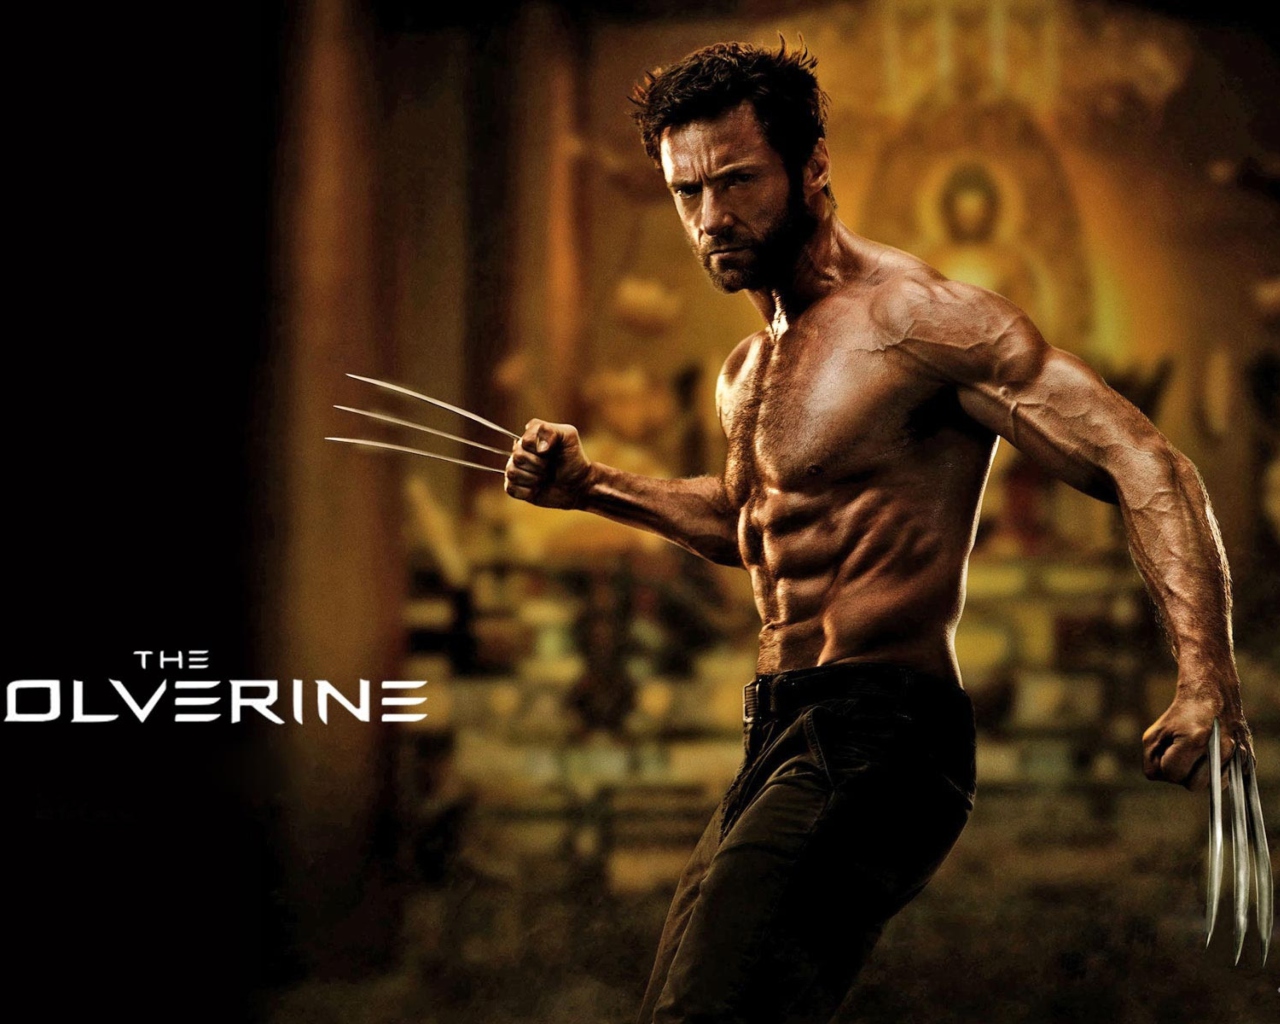 Das The Wolverine 2013 Movie Wallpaper 1280x1024